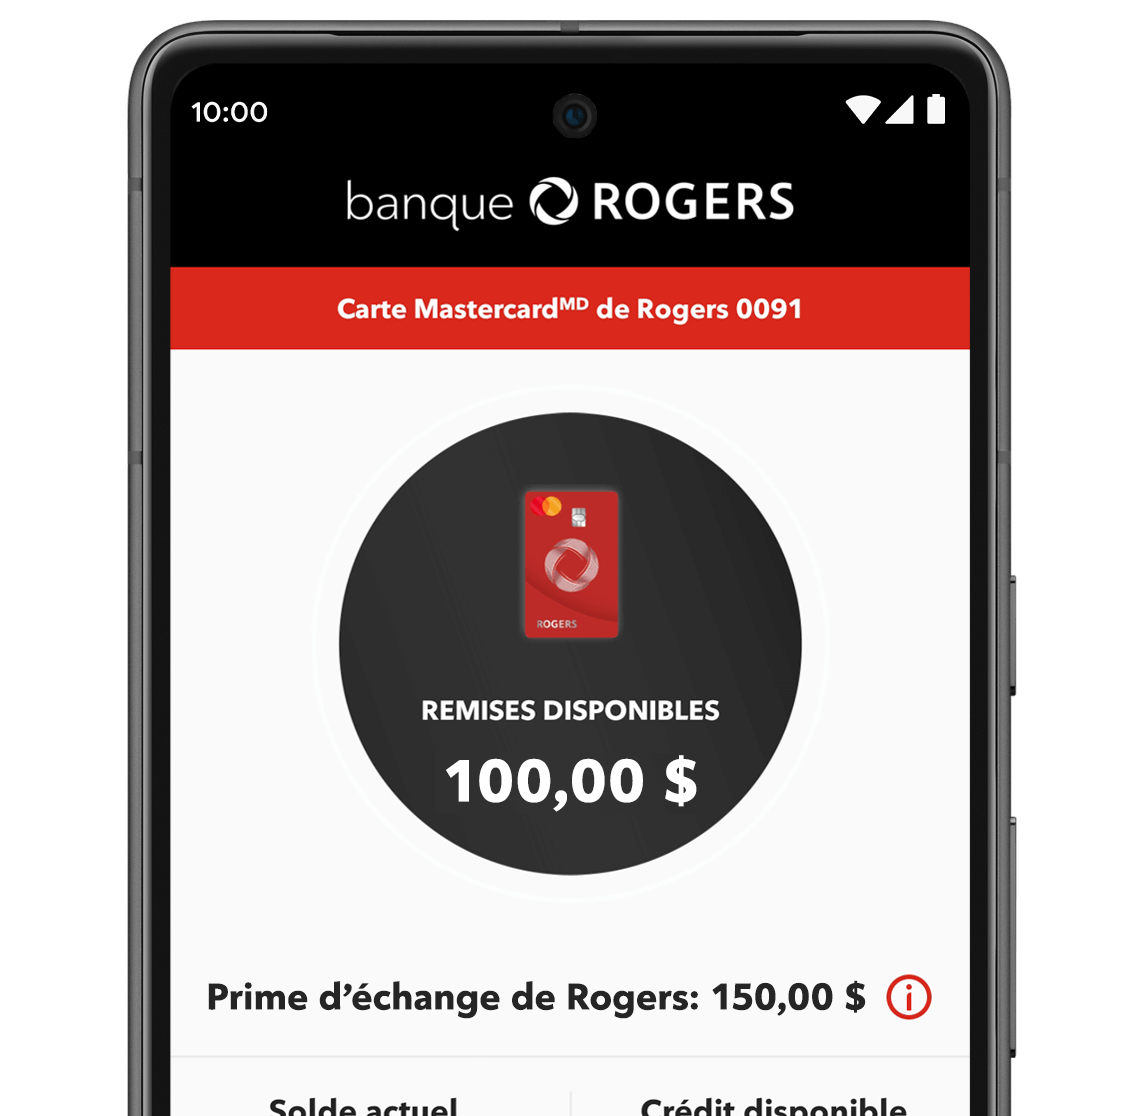 Rogers Bank App